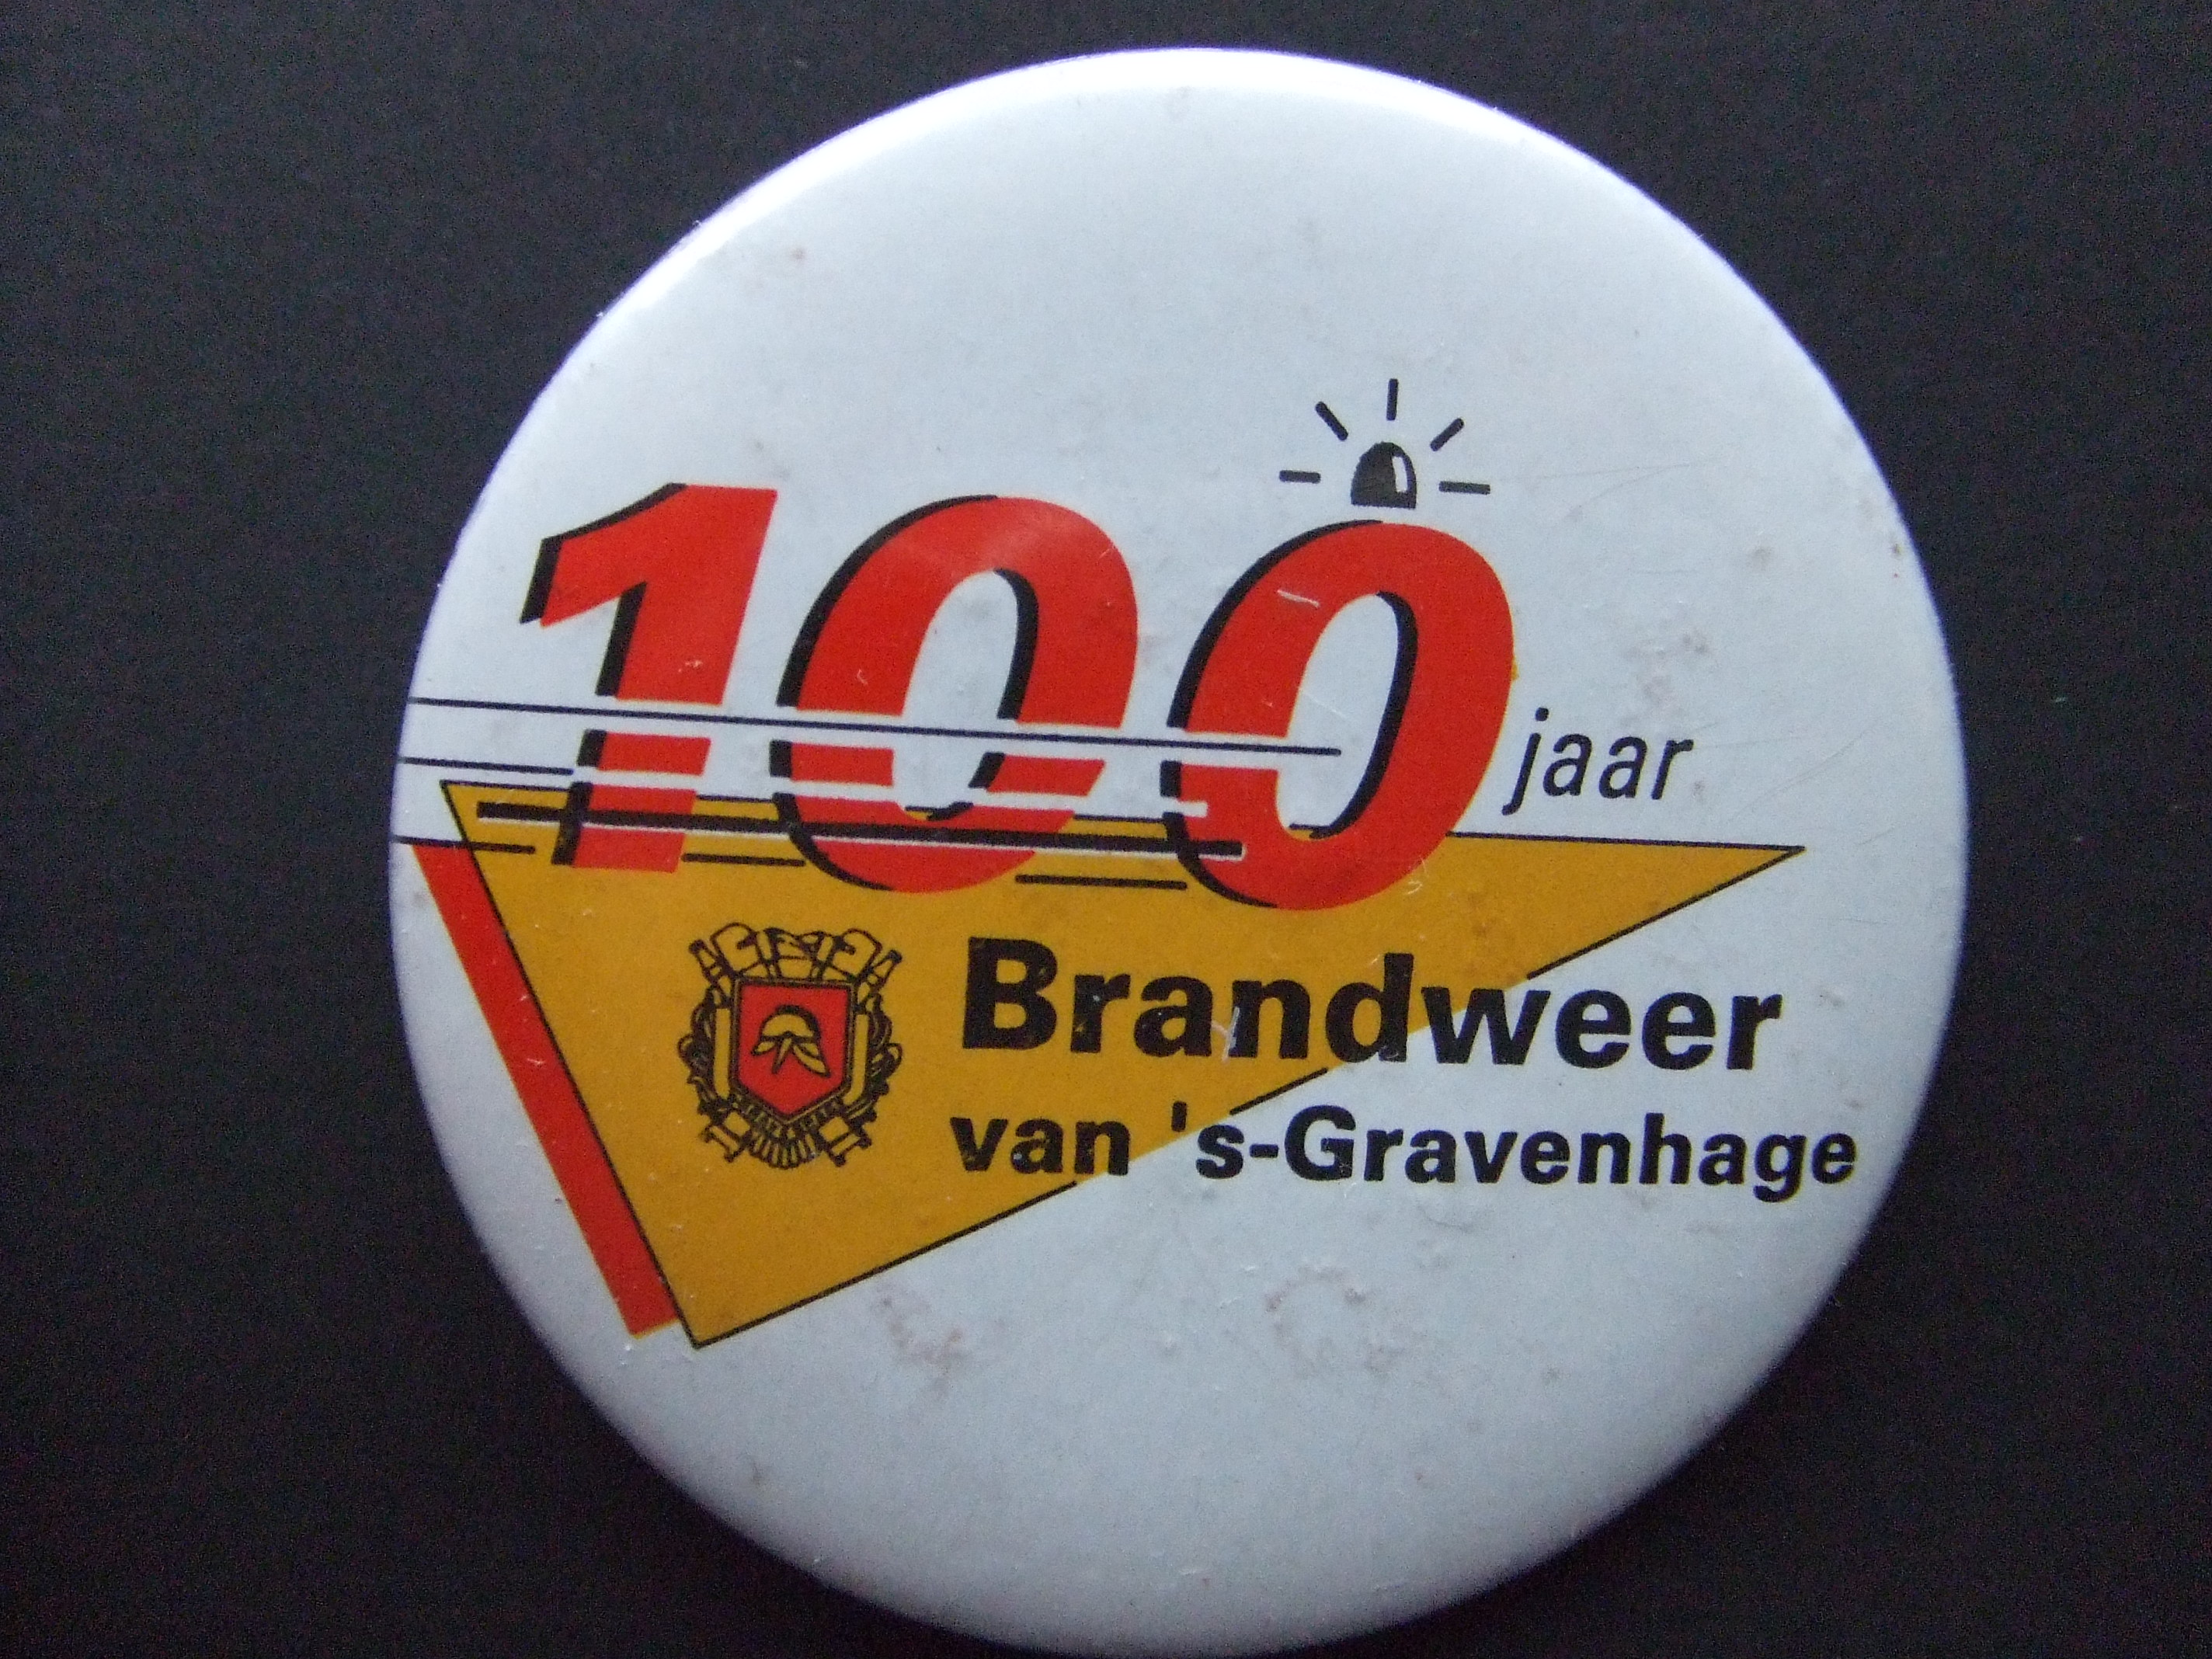 Brandweer Den Haag 100 jaar